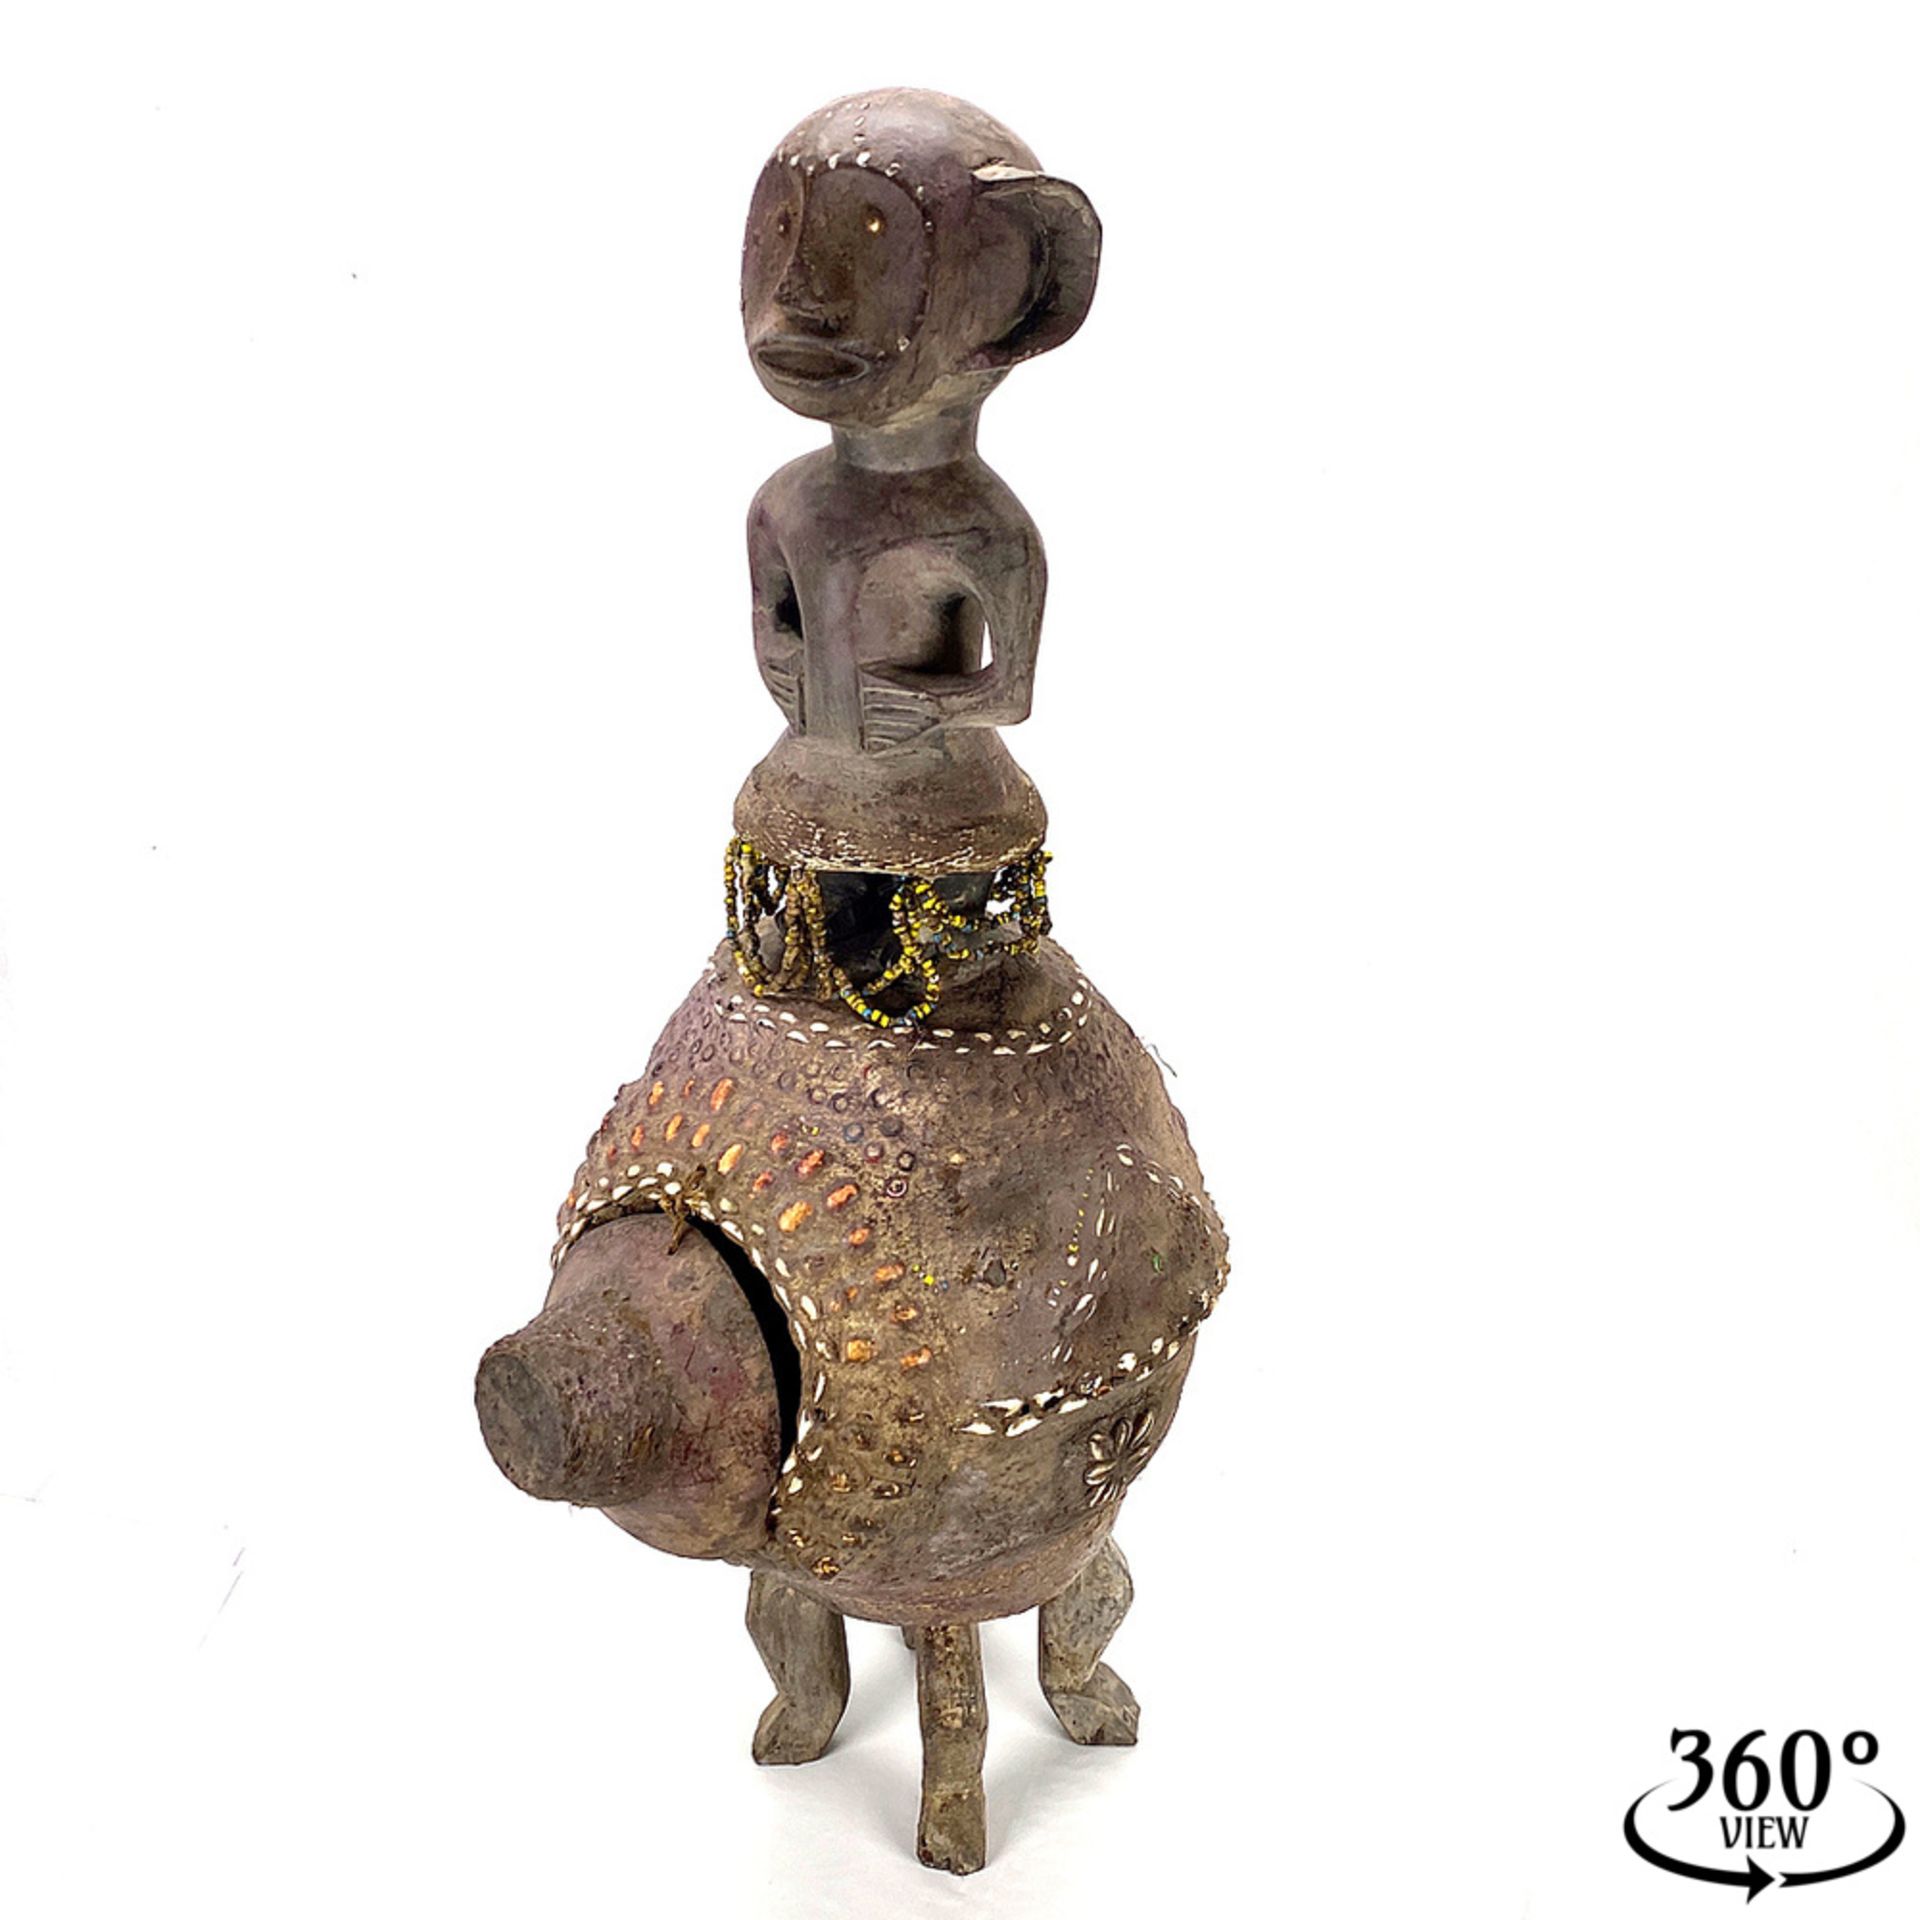 Figurative vessel of the Luba, DR Congo